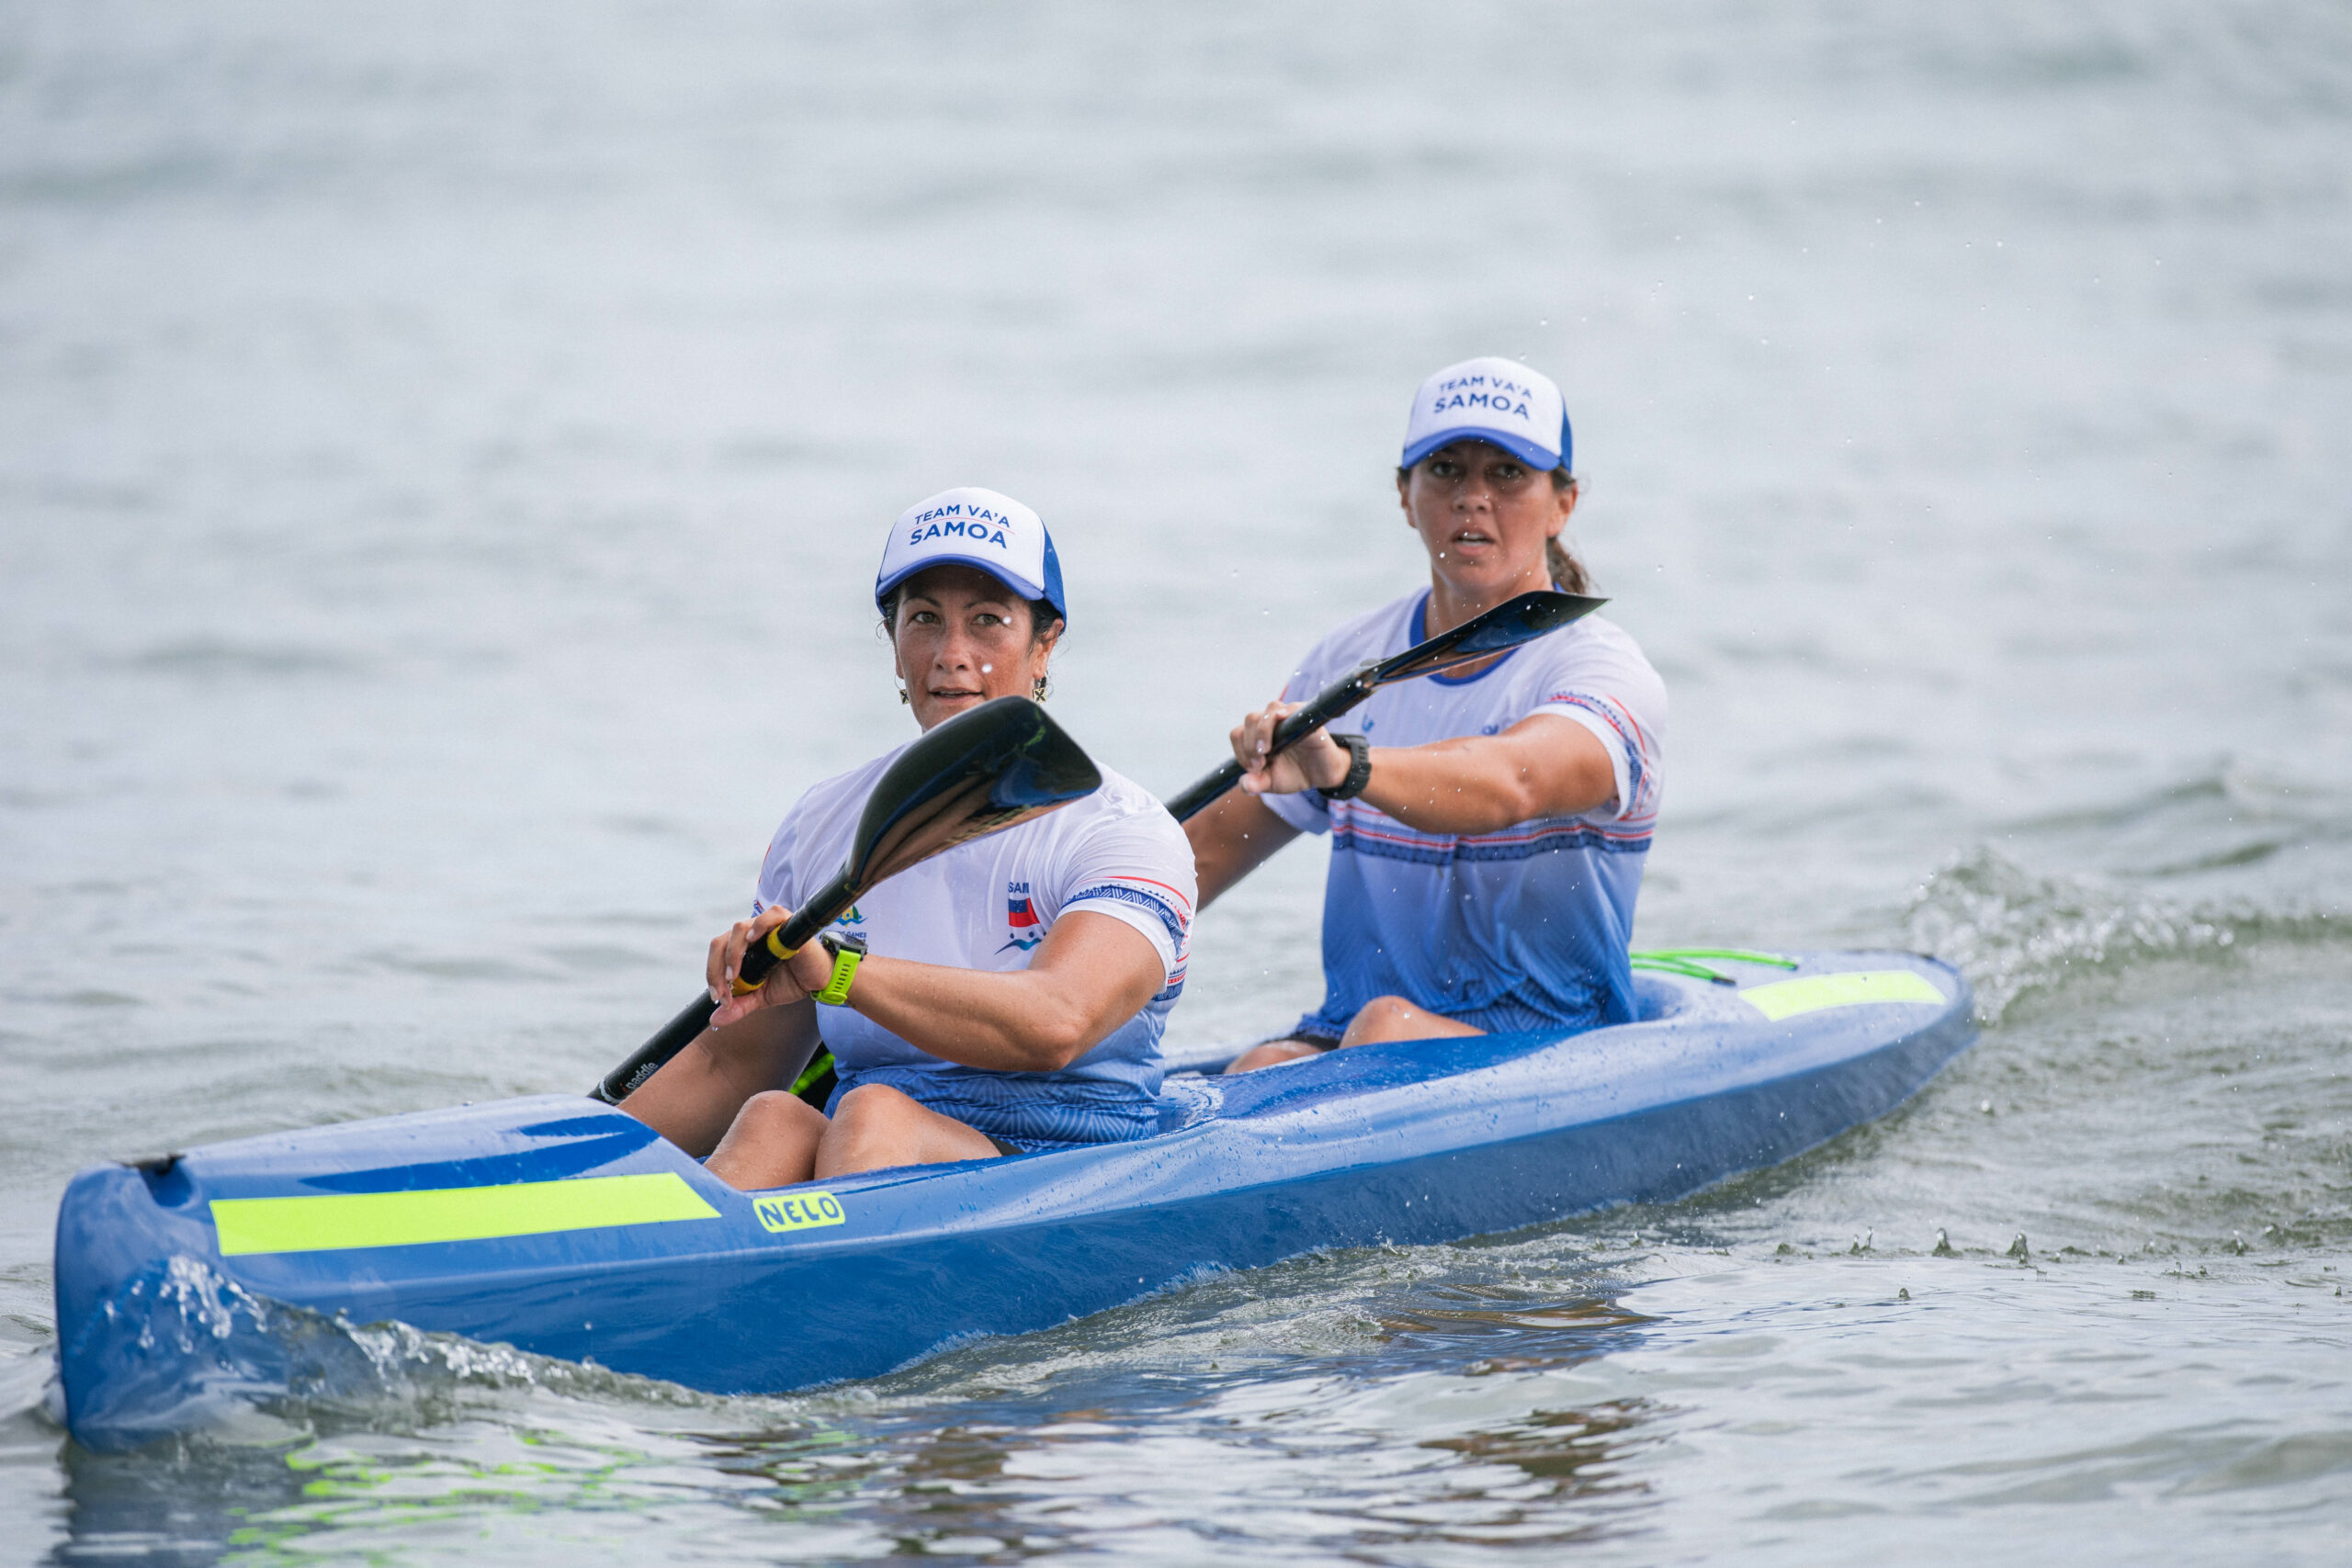 Two women in a kayak race